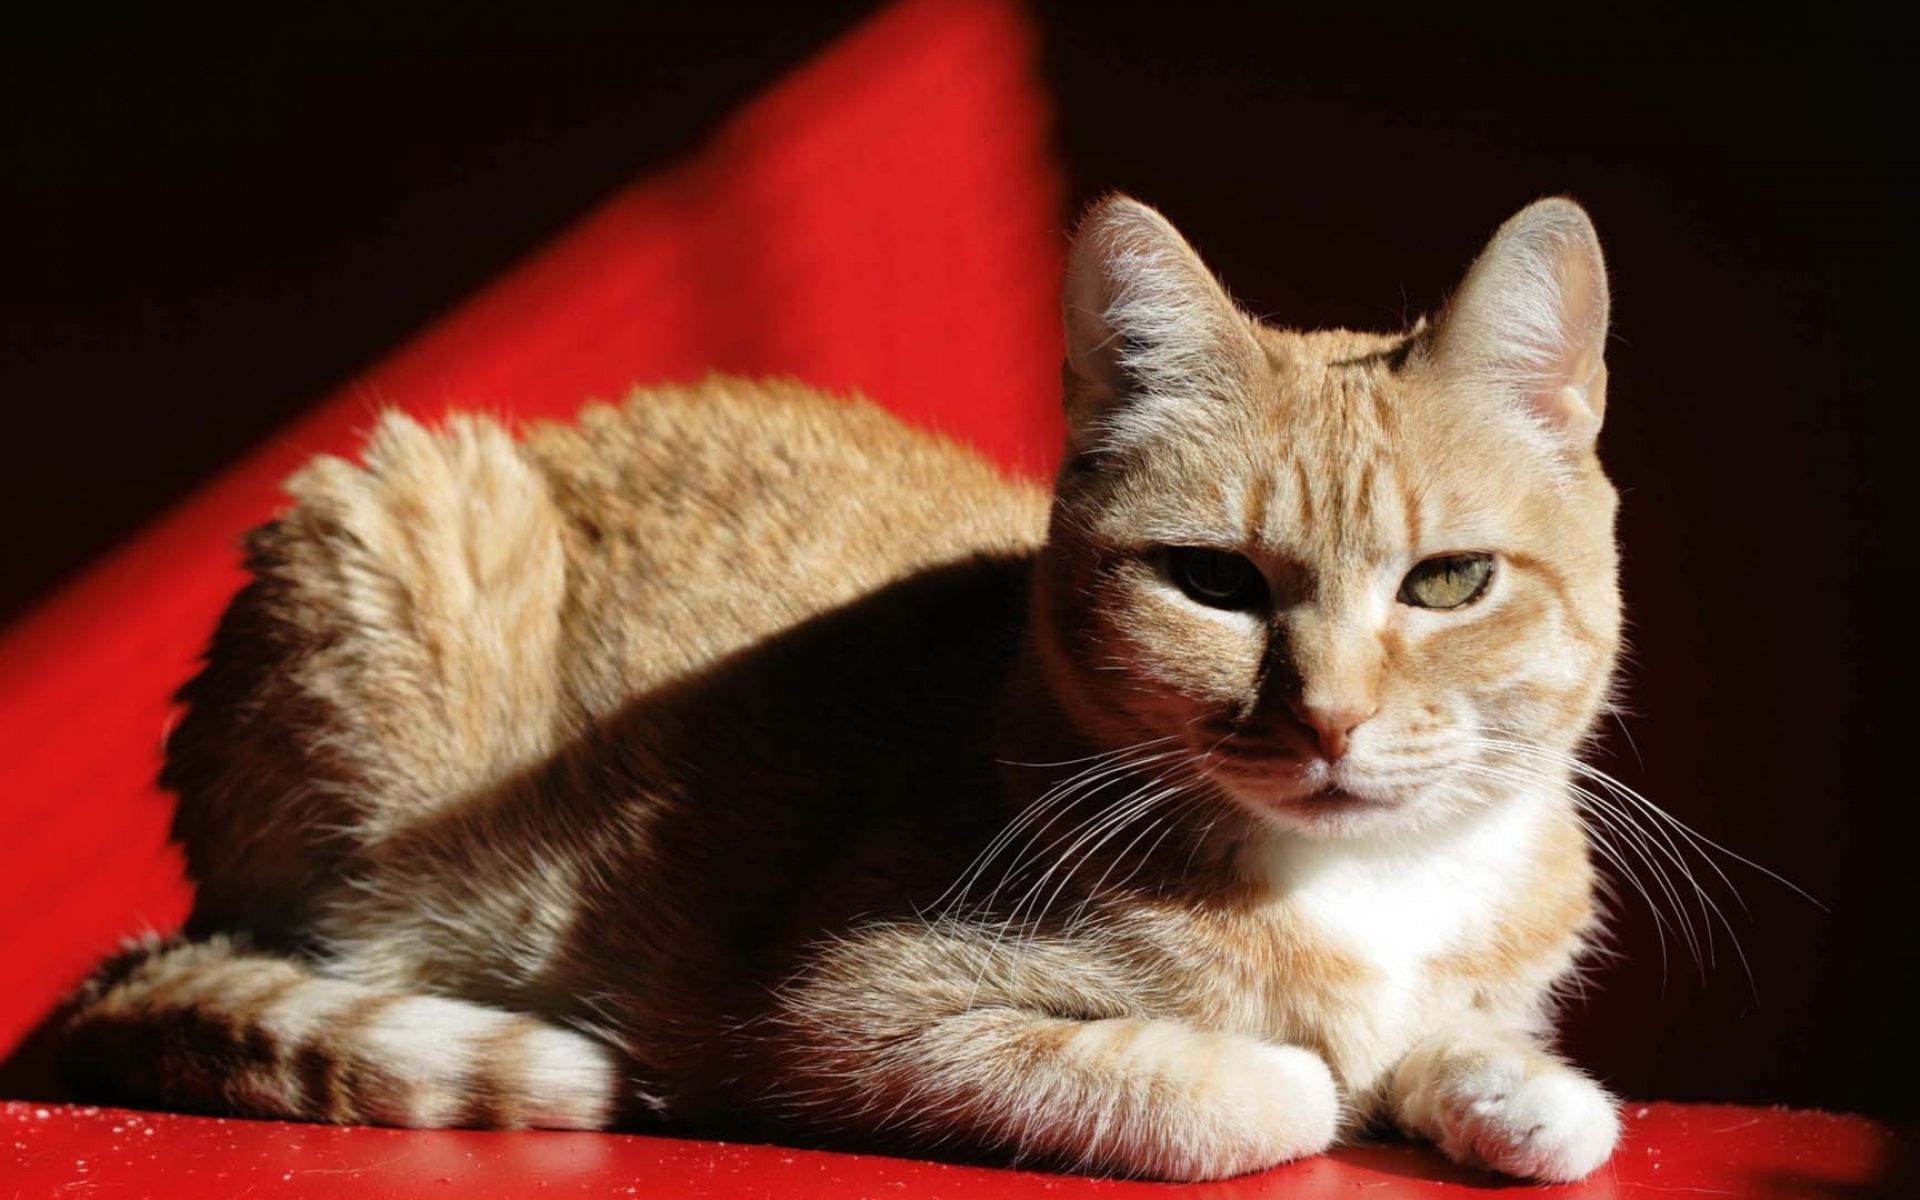 Red cat папа. Европейский короткошерстный кот рыжий. Европейская кошка короткошерстная красный тэбби. Европейская короткошерстная кошка рыжая. Кошка на Красном фоне.